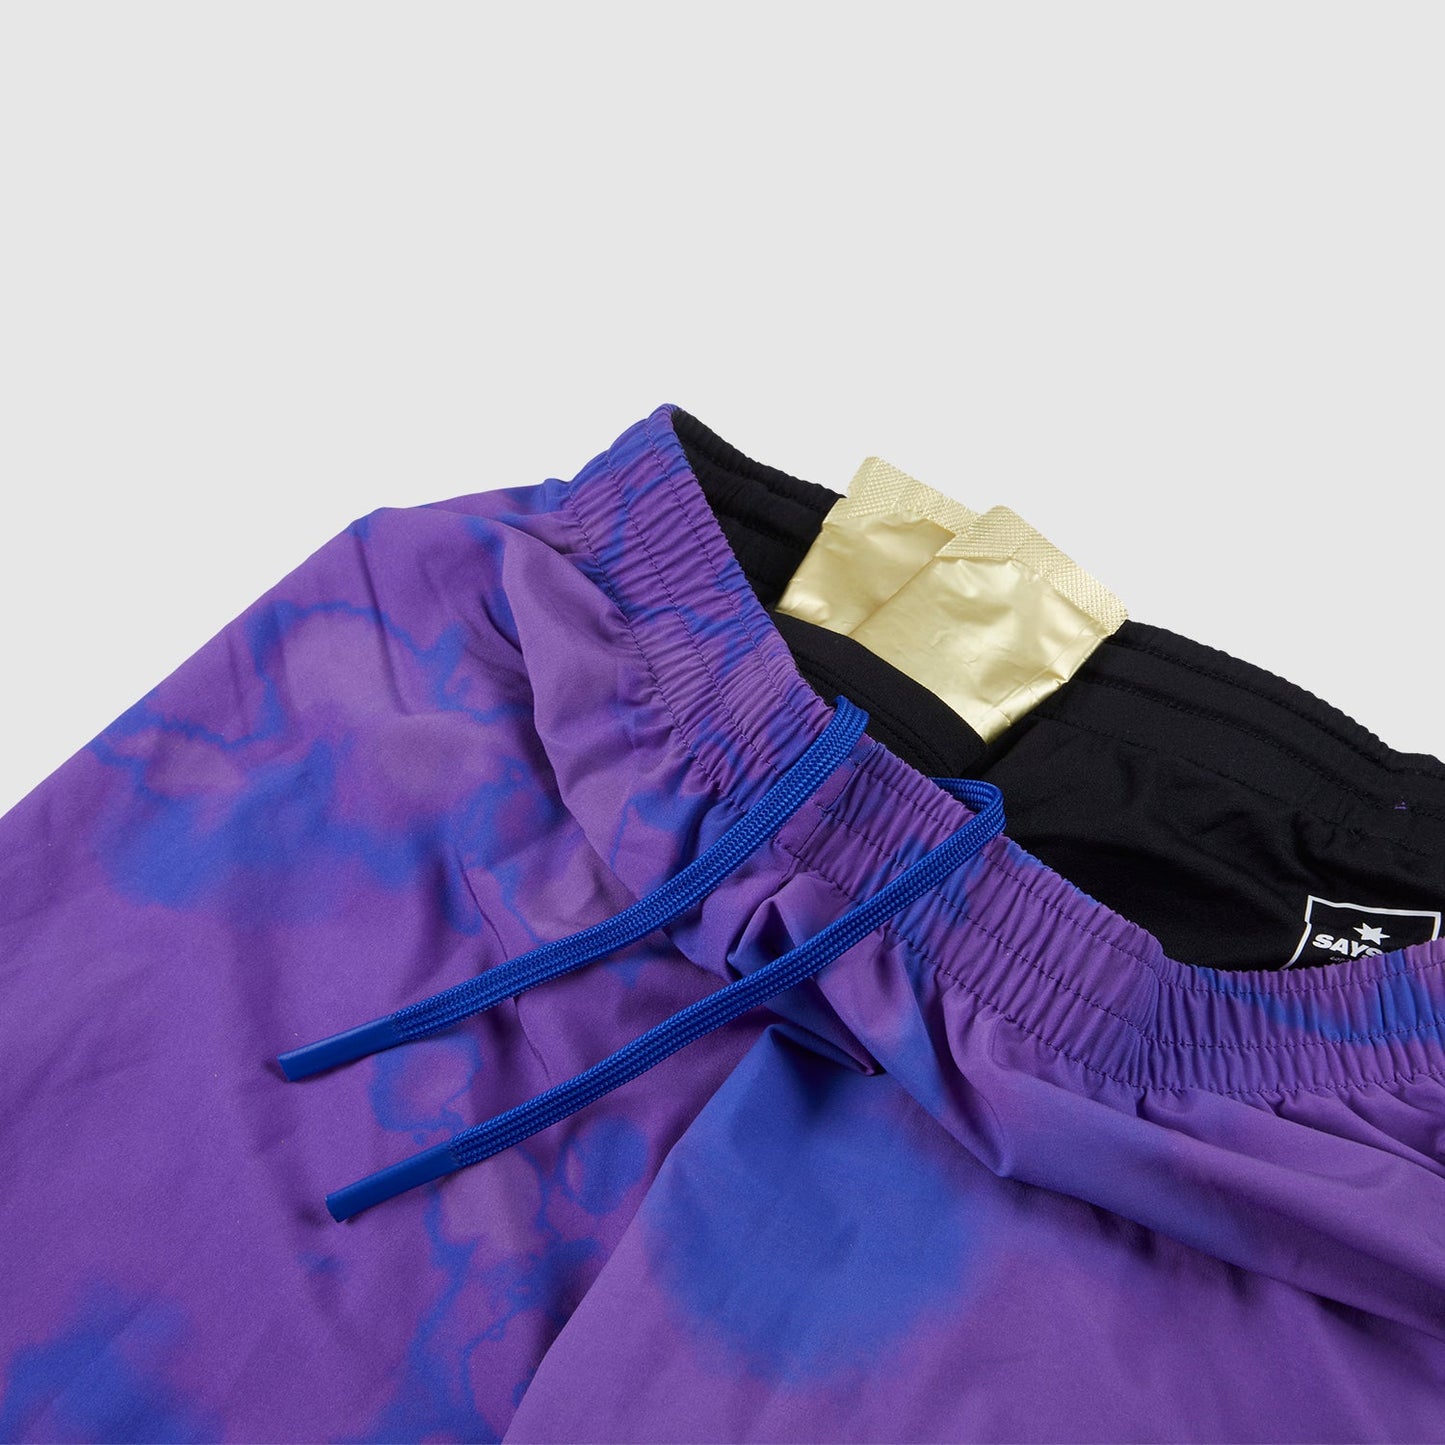 ランニングショーツ HMRSH09 Pace Long Shorts - Purple Toxicity [ユニセックス]